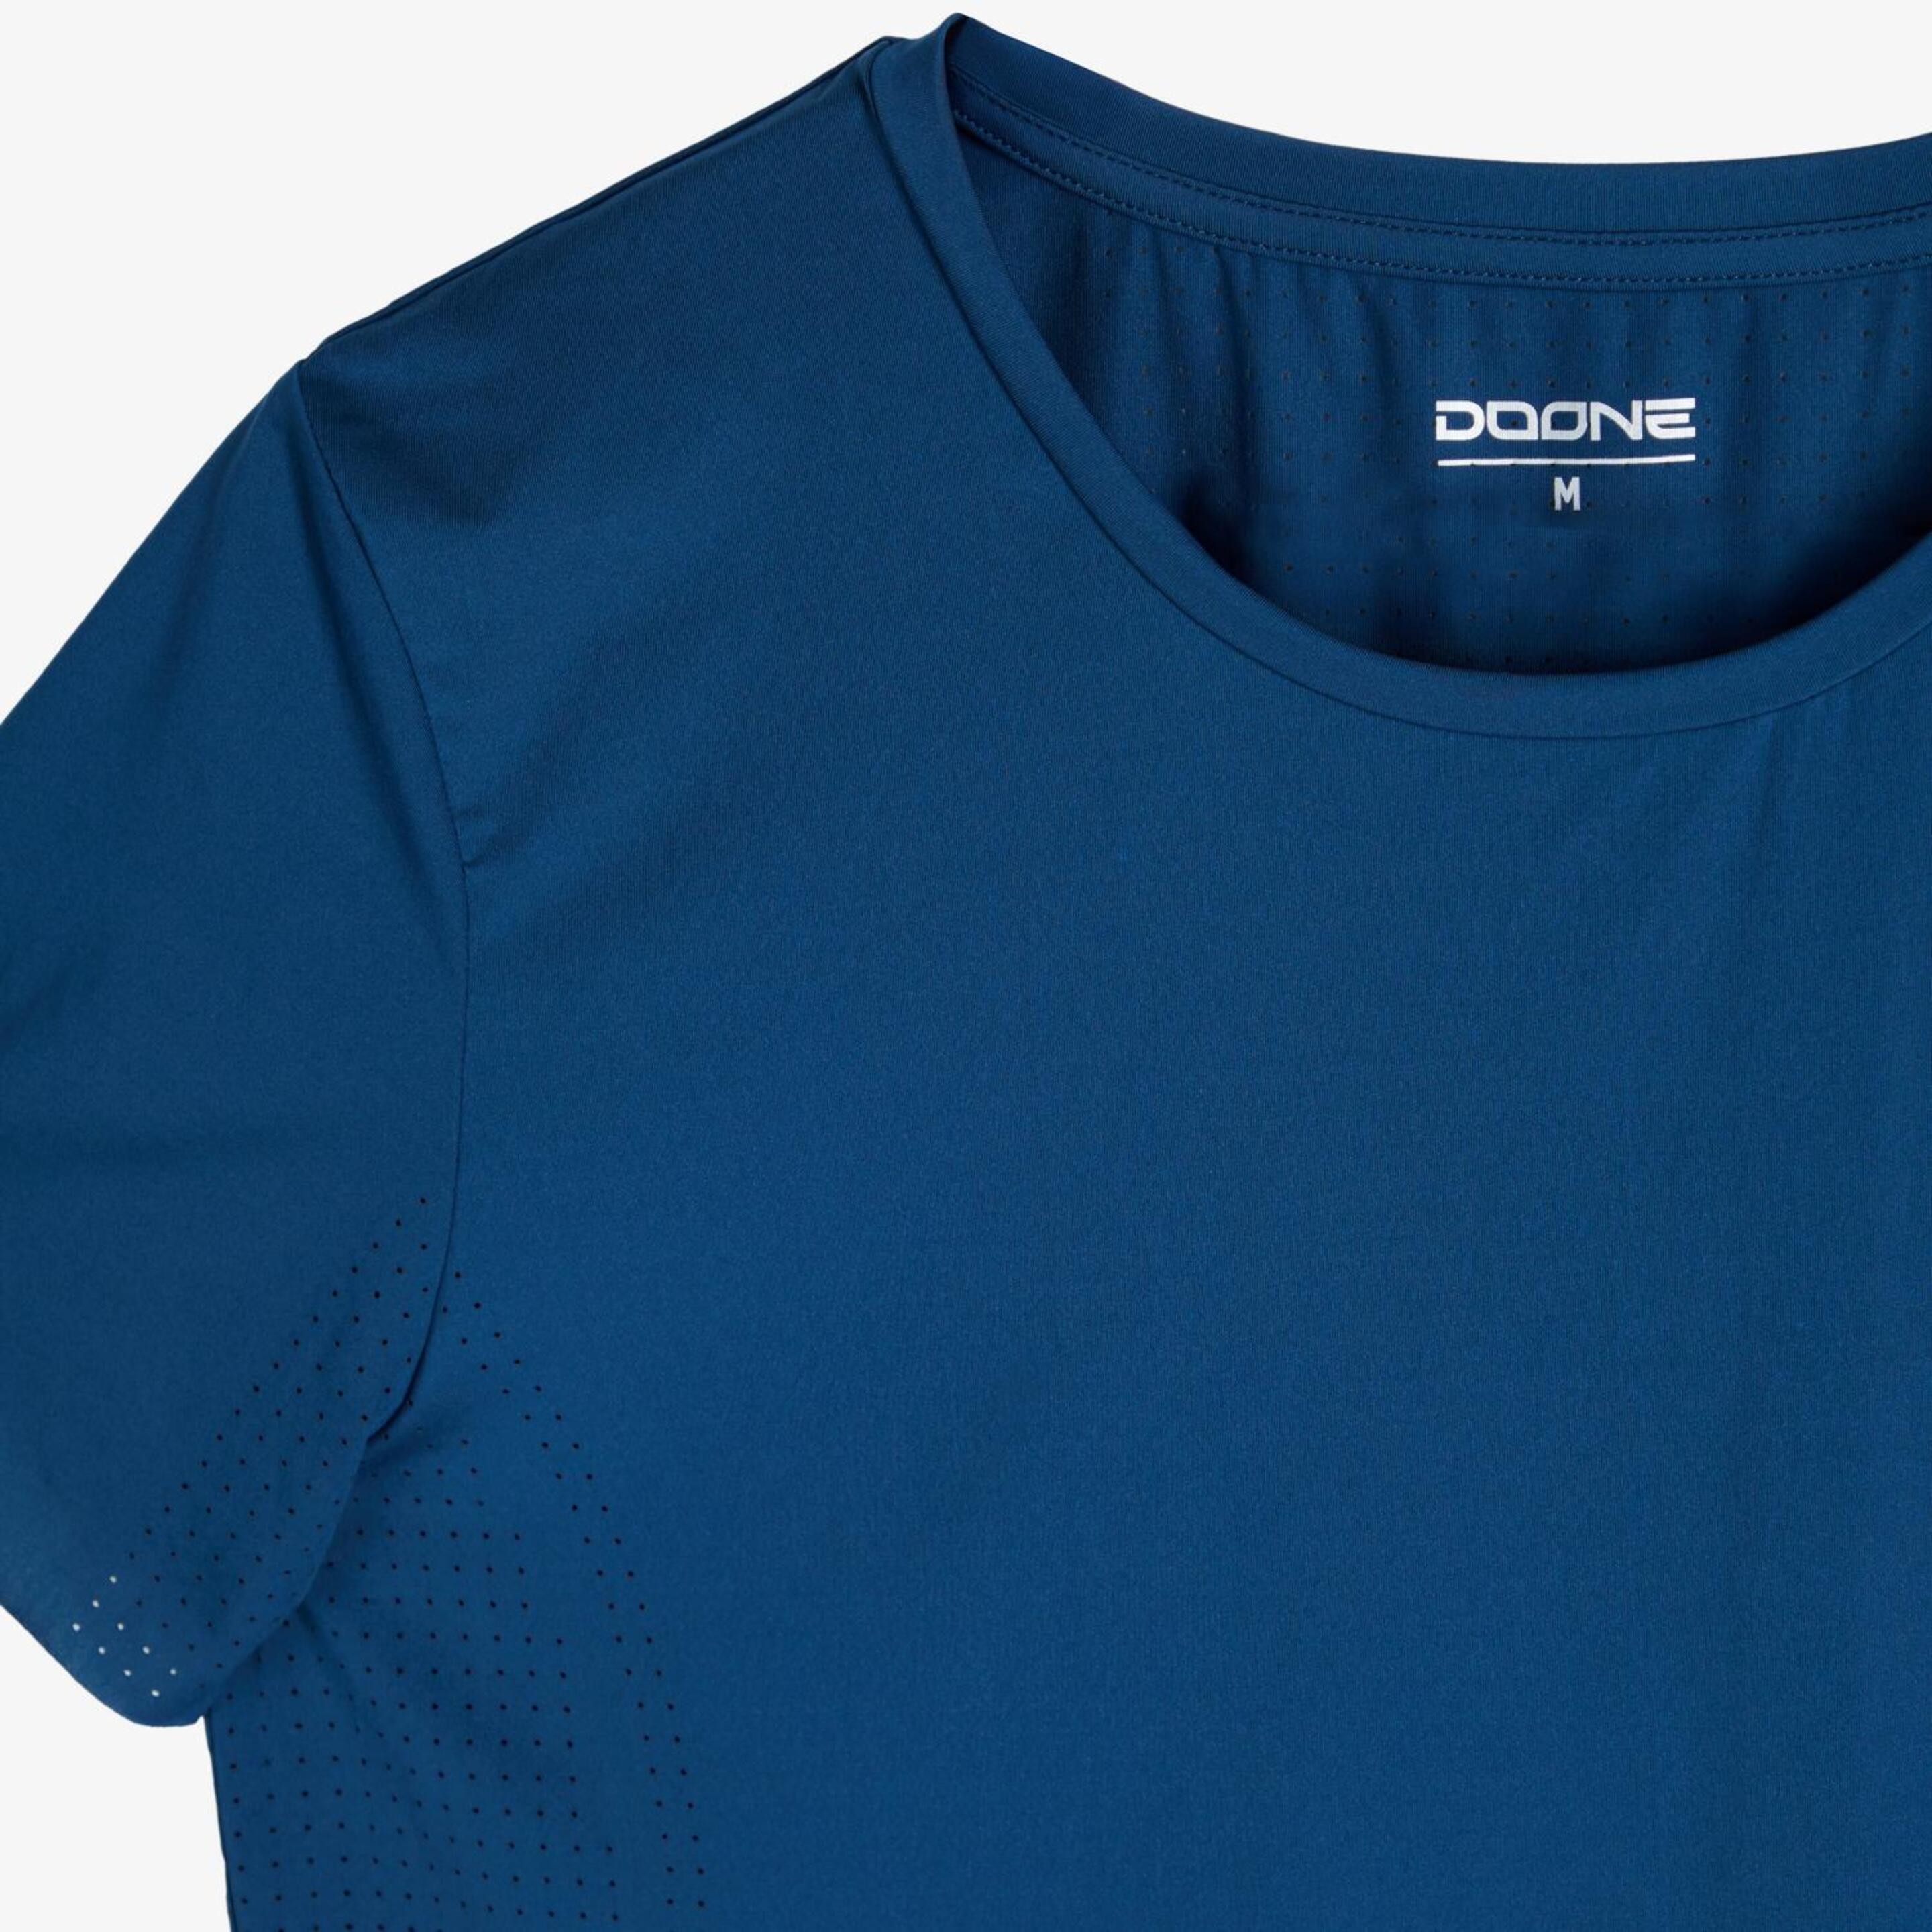 Doone Casual Luxe - Marino - Camiseta Mujer